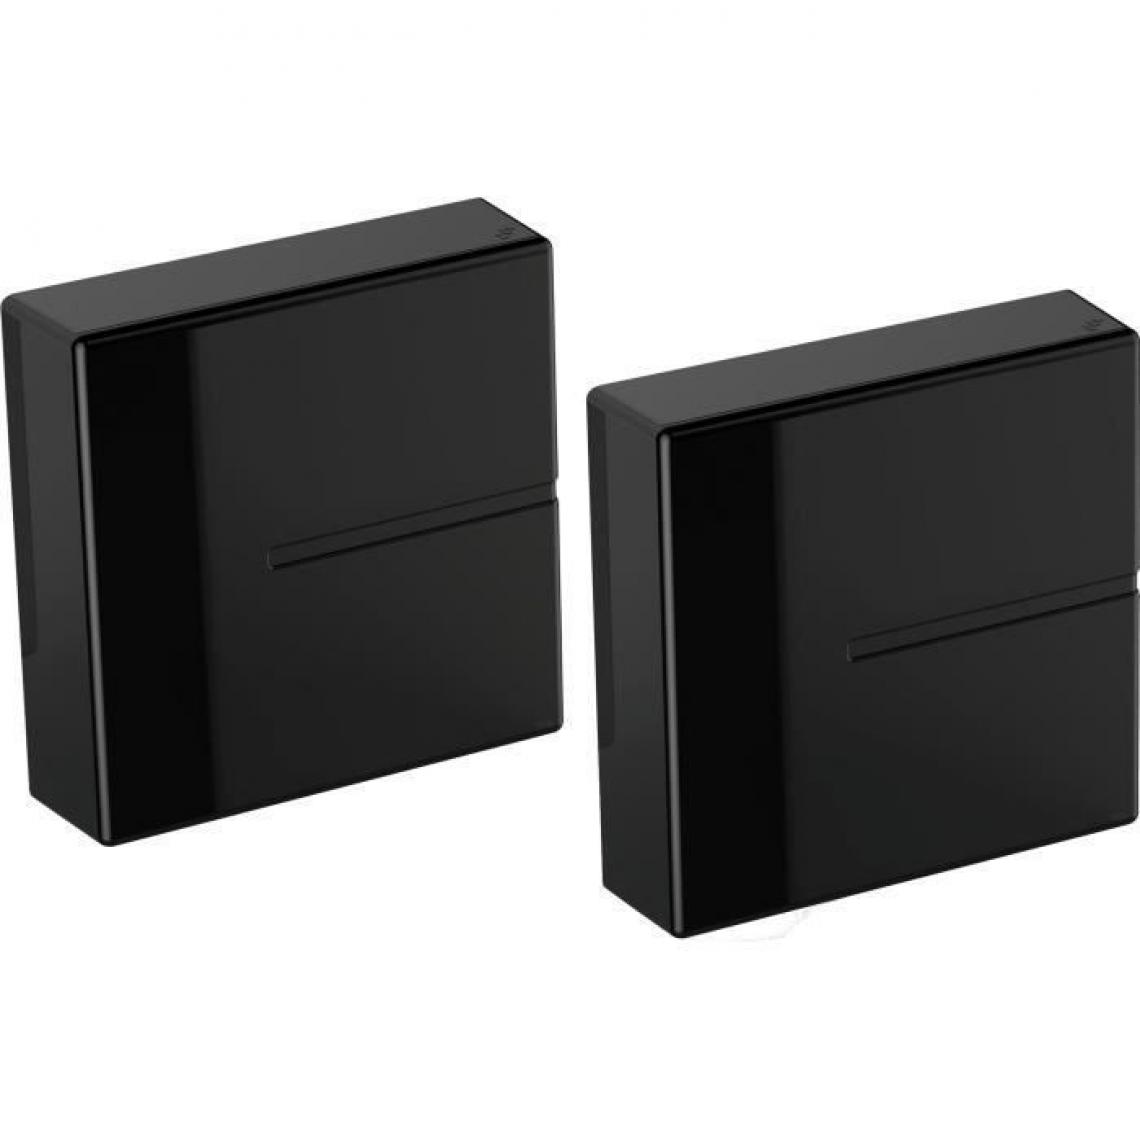 Meliconi - MELICONI GHOST CUBE COVER Systeme de gestion des cables - Comprend 2 cubes - Poids max : 3 Kg - Cube : 20 x 20,5 x 5,3 cm - Noir - accessoires cables meubles supports